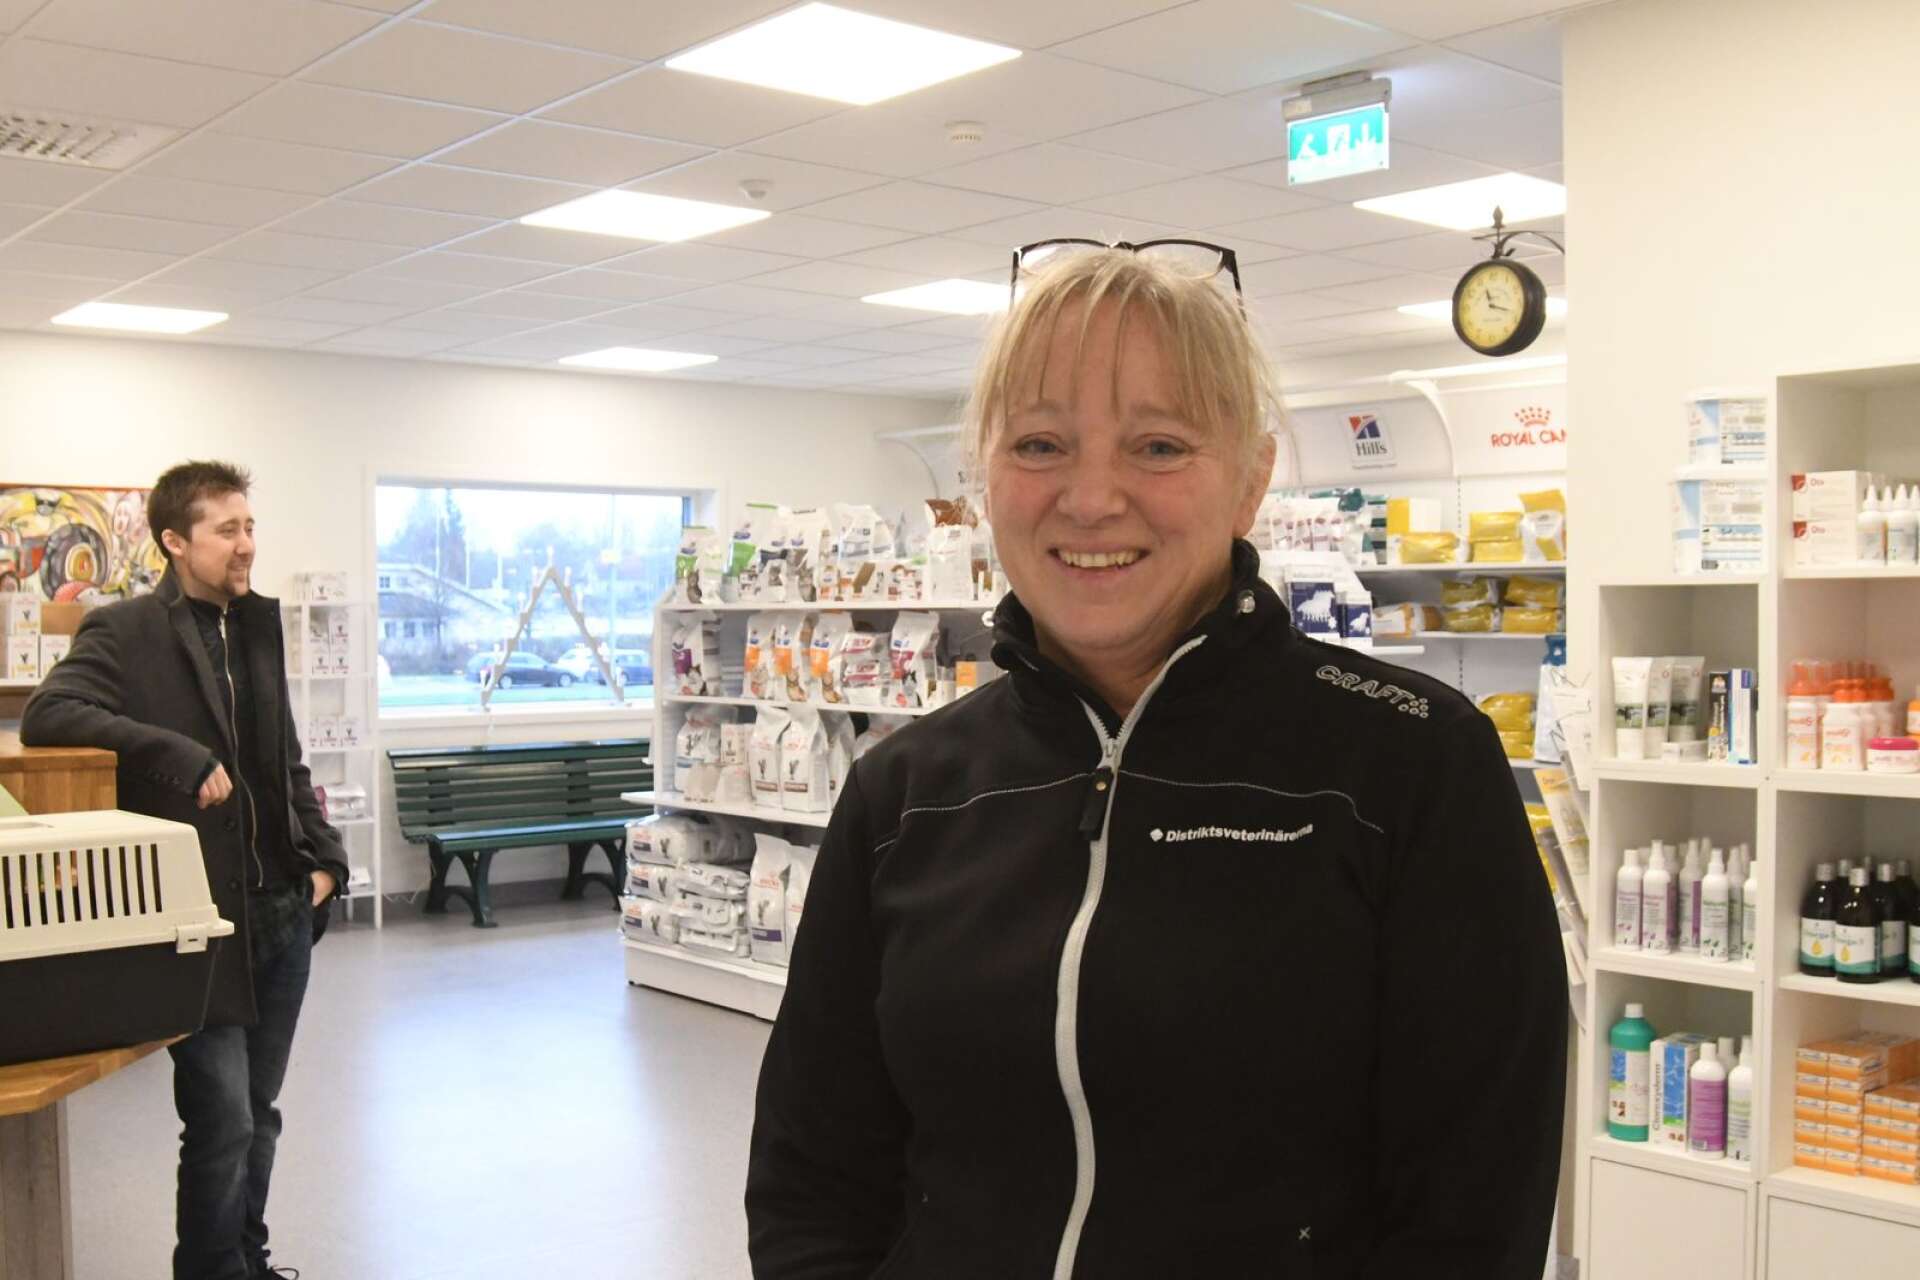 Agneta Nyhlén, klinikchef på Distriktsveterinärerna i Arvika, är helnöjd med de nya lokalerna. Dubbelt så stora ytor och en rejäl uppfräschning har gjorts.